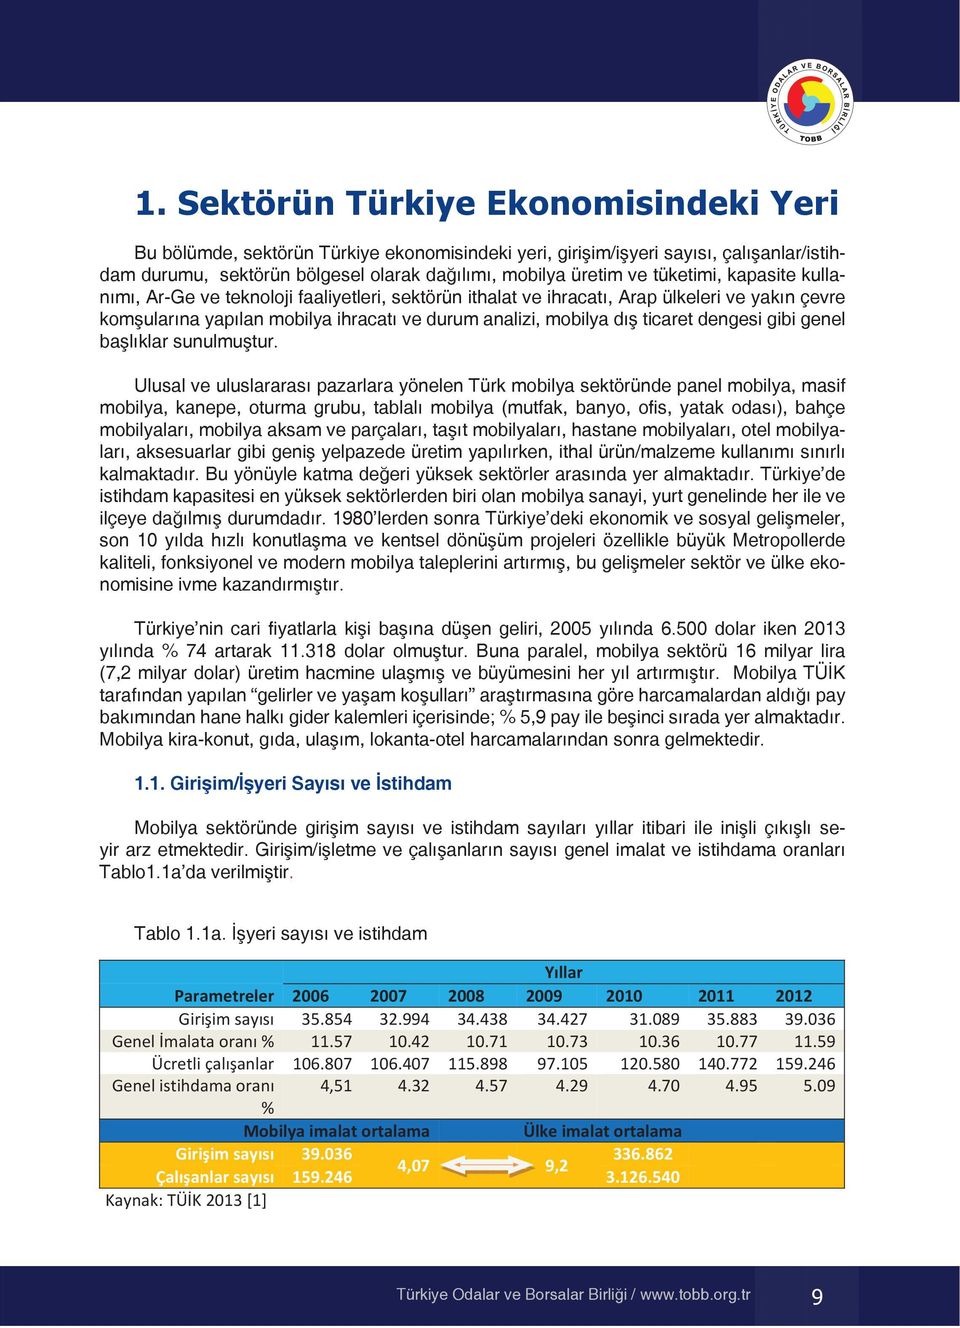 yakın çevre komşularına Bu bölümde, yapılan sektörün mobilya Türkiye ihracatı ekonomisindeki ve durum analizi, yeri, mobilya girişim/işyeri dış ticaret say s, dengesi çal şanlar/istihdam gibi genel